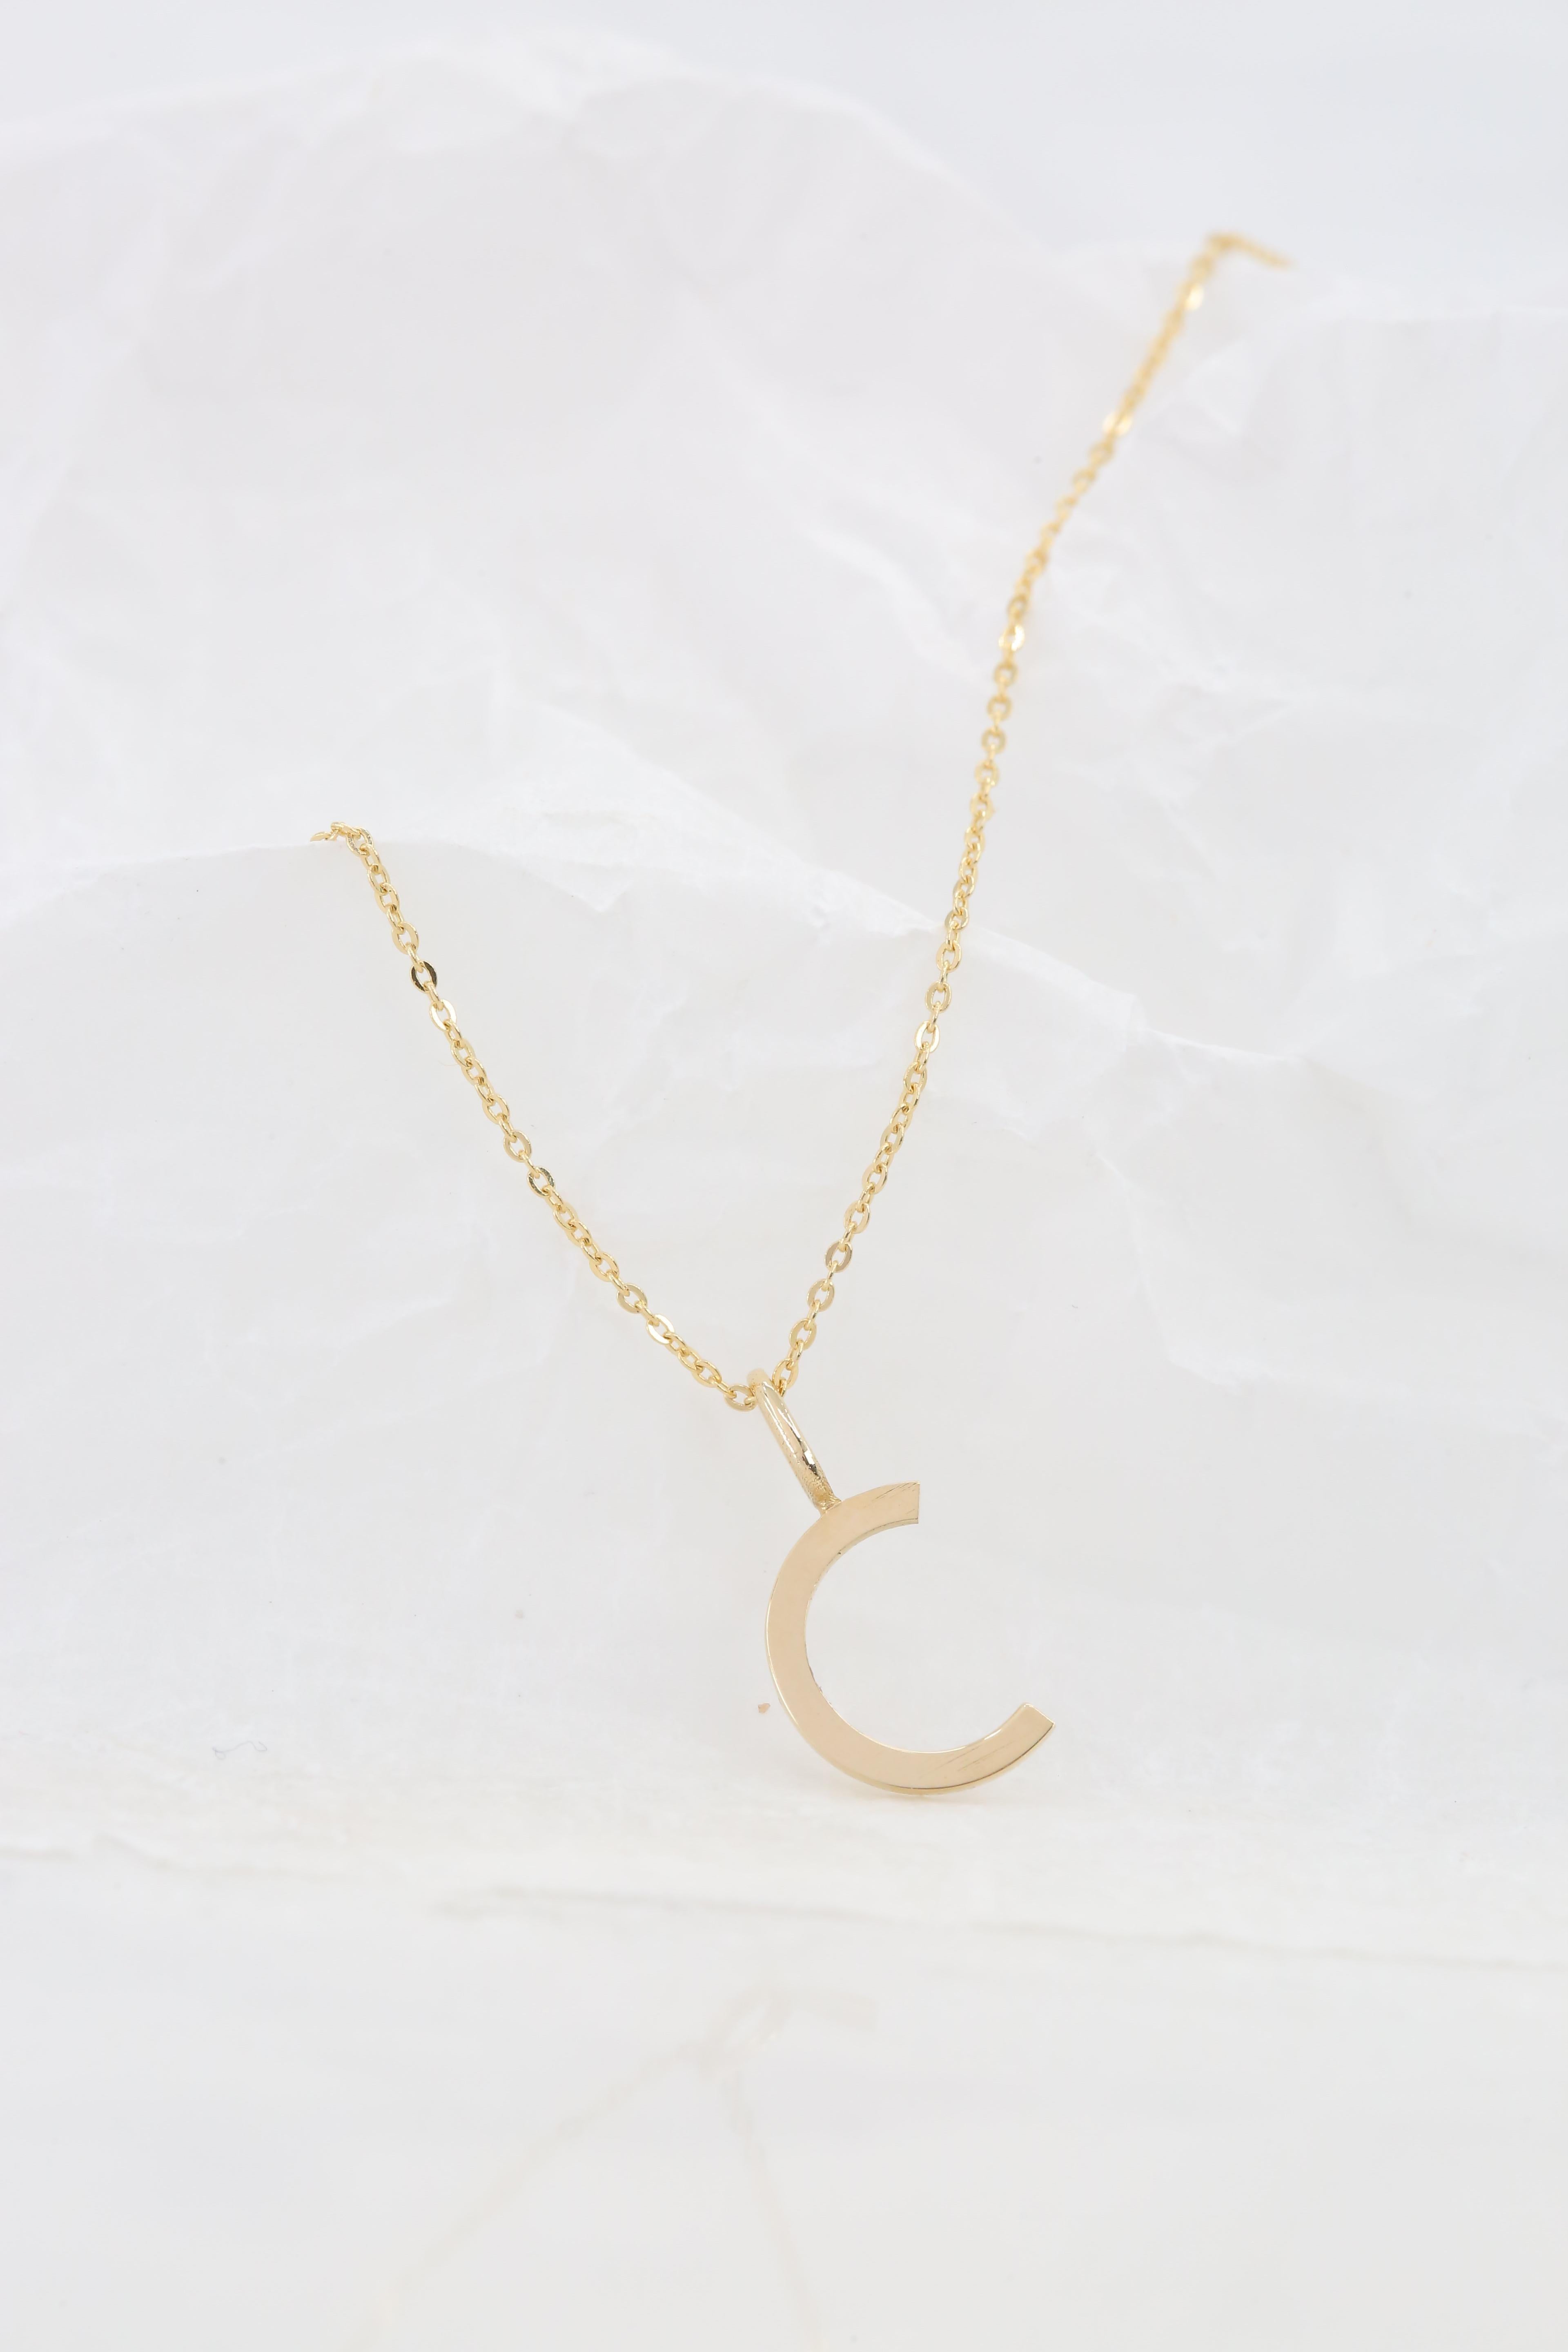 Women's or Men's 14k Gold Necklaces, Letter Necklace Models, Letter C Gold Necklace-Gift Necklace For Sale